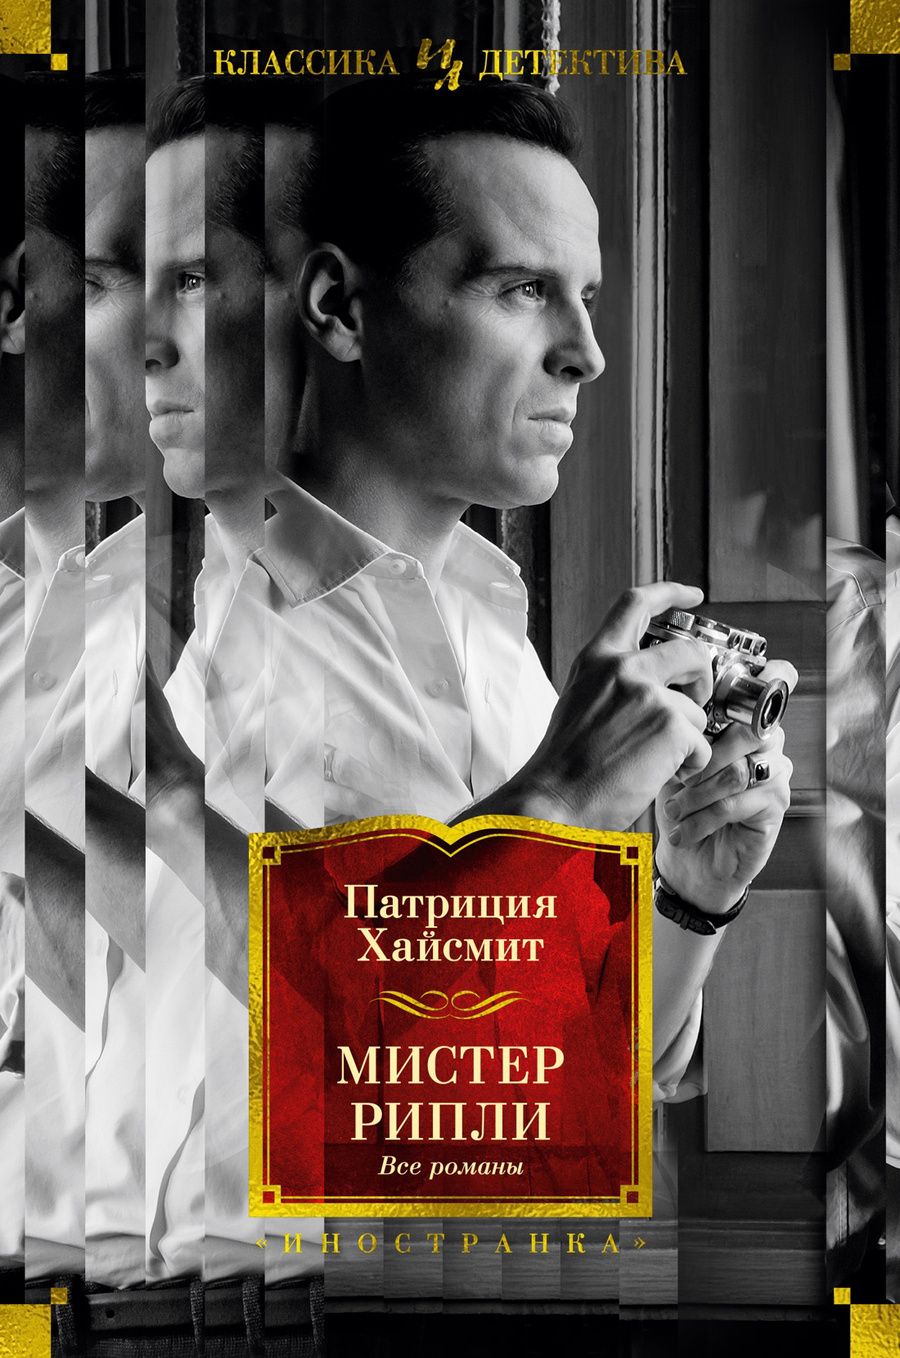 Обложка книги "Патриция Хайсмит: Мистер Рипли: Все романы"